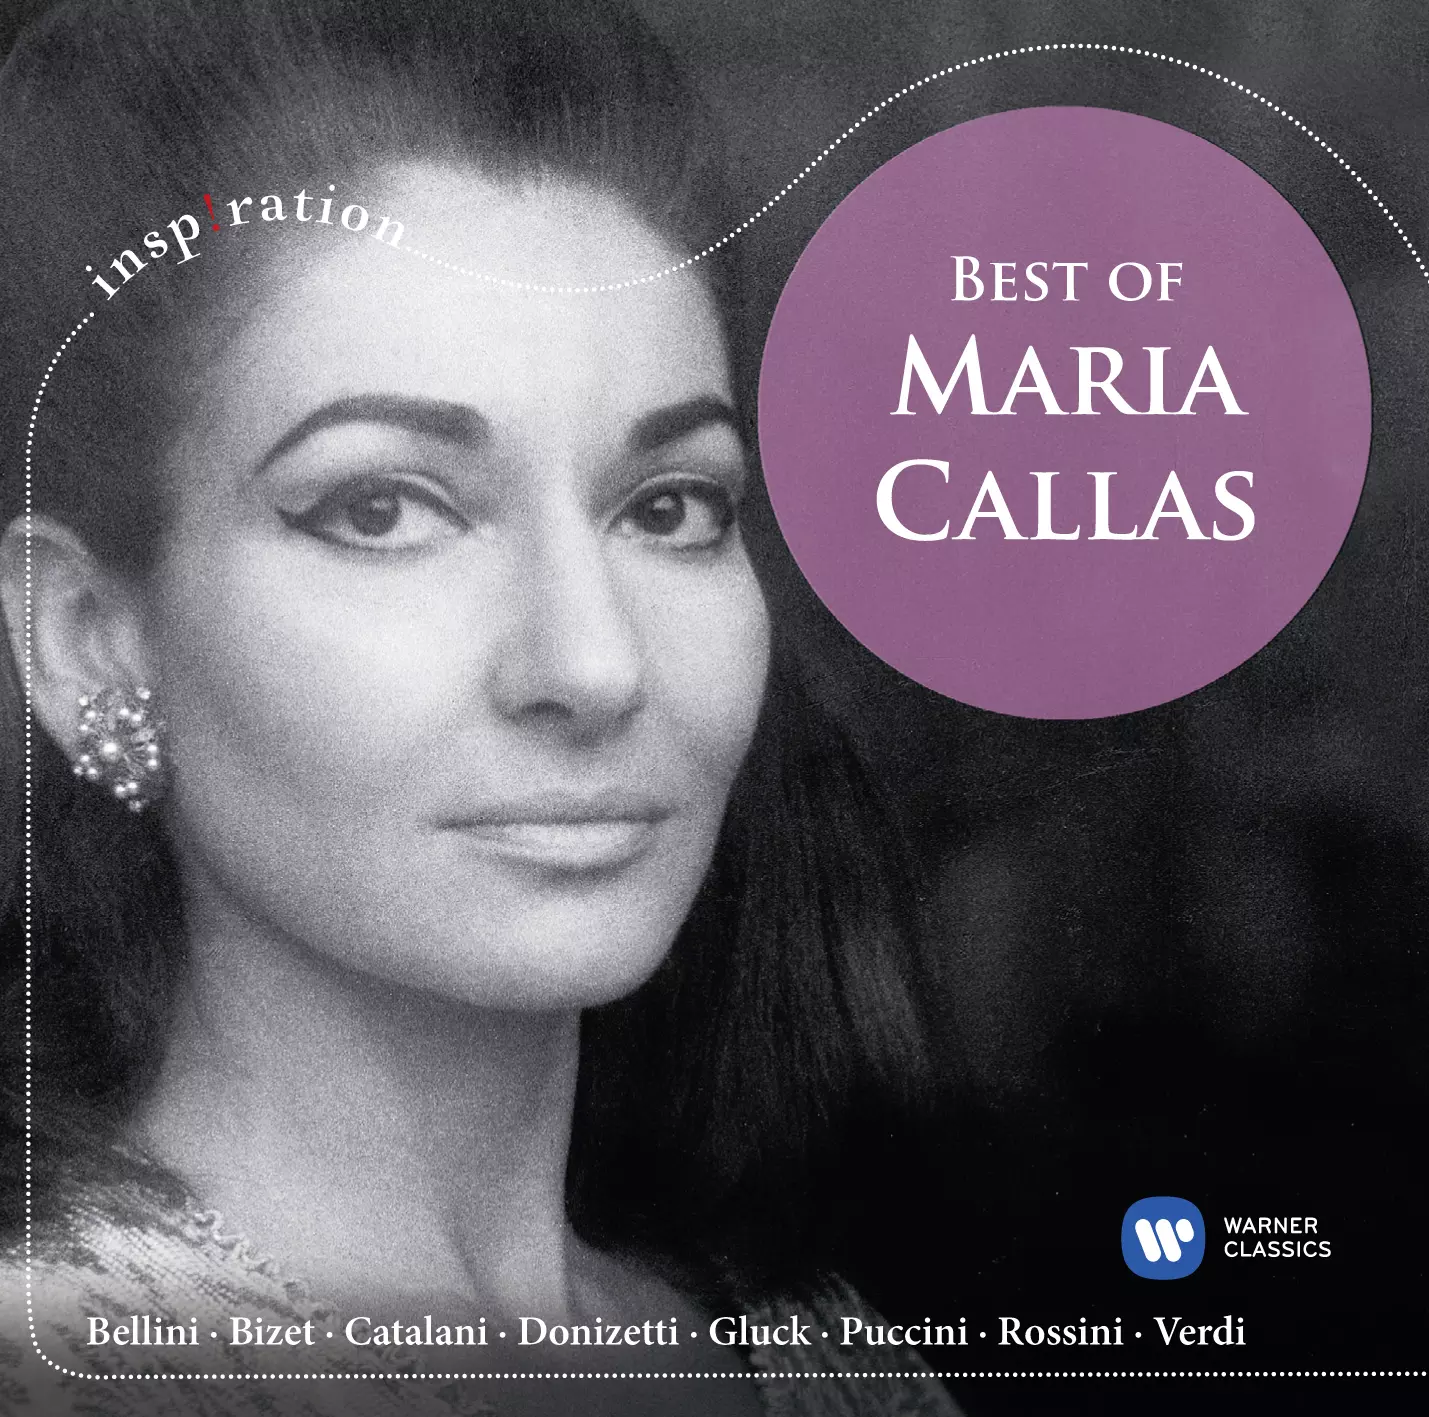 Best of Maria Callas